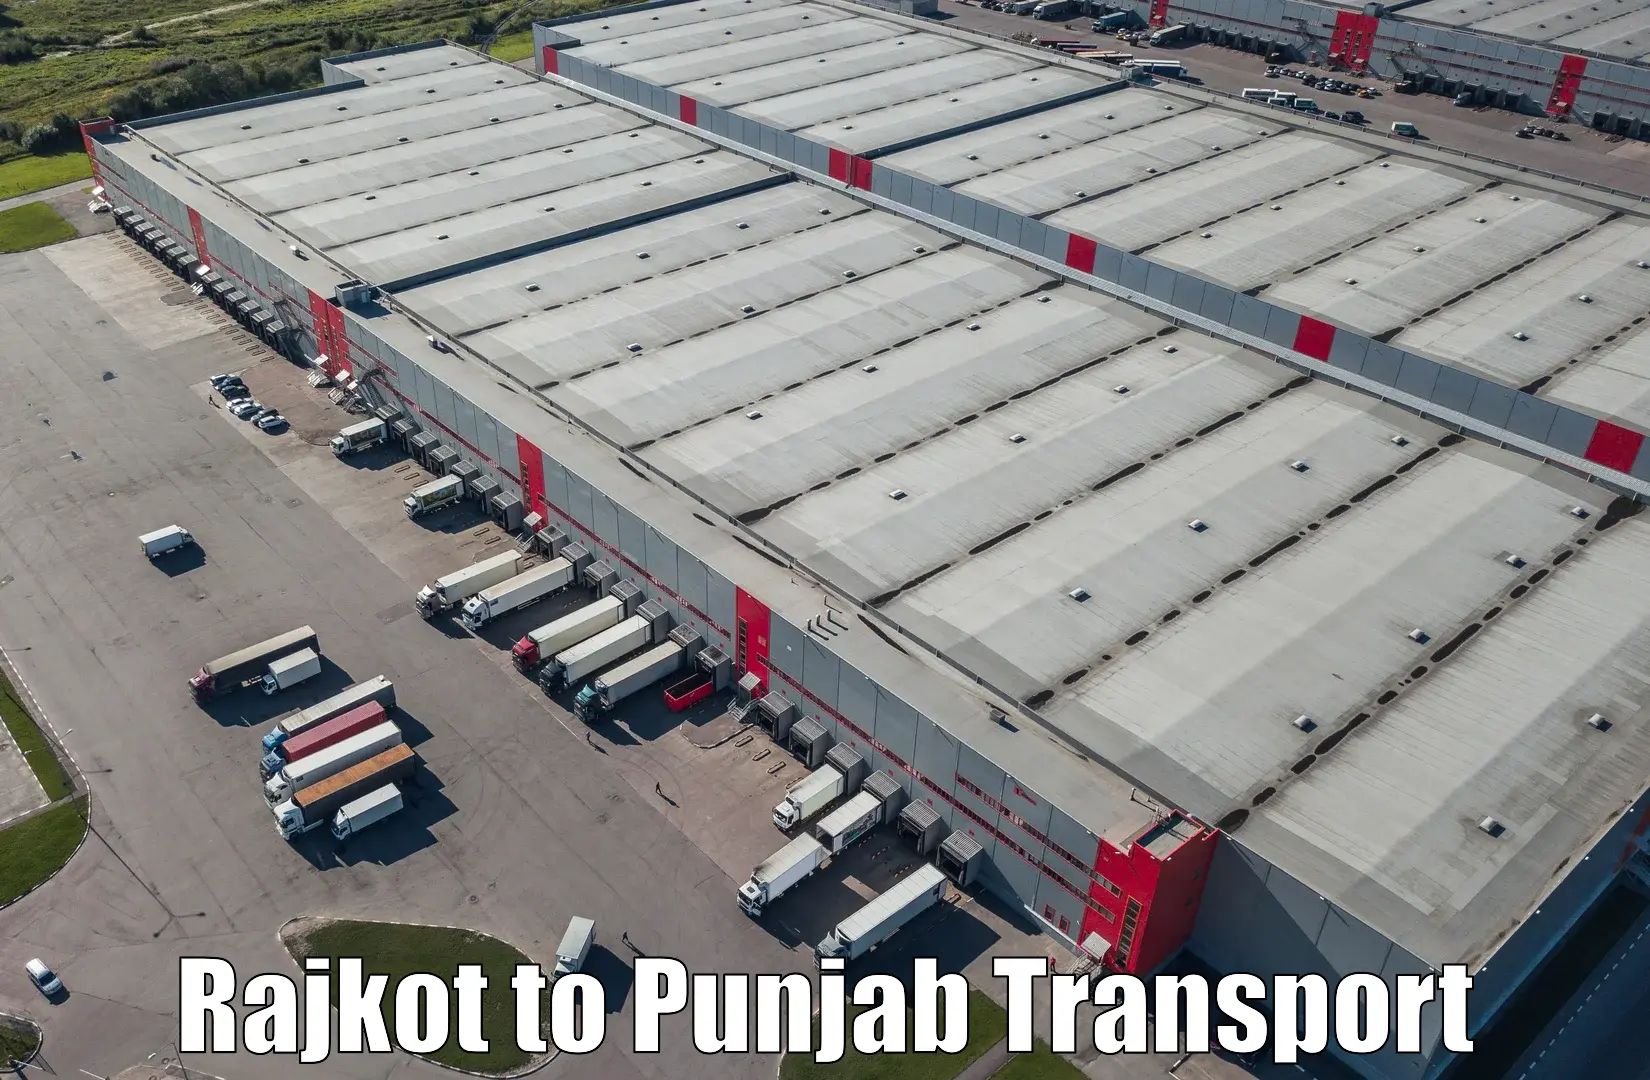 Transportation solution services Rajkot to Amritsar